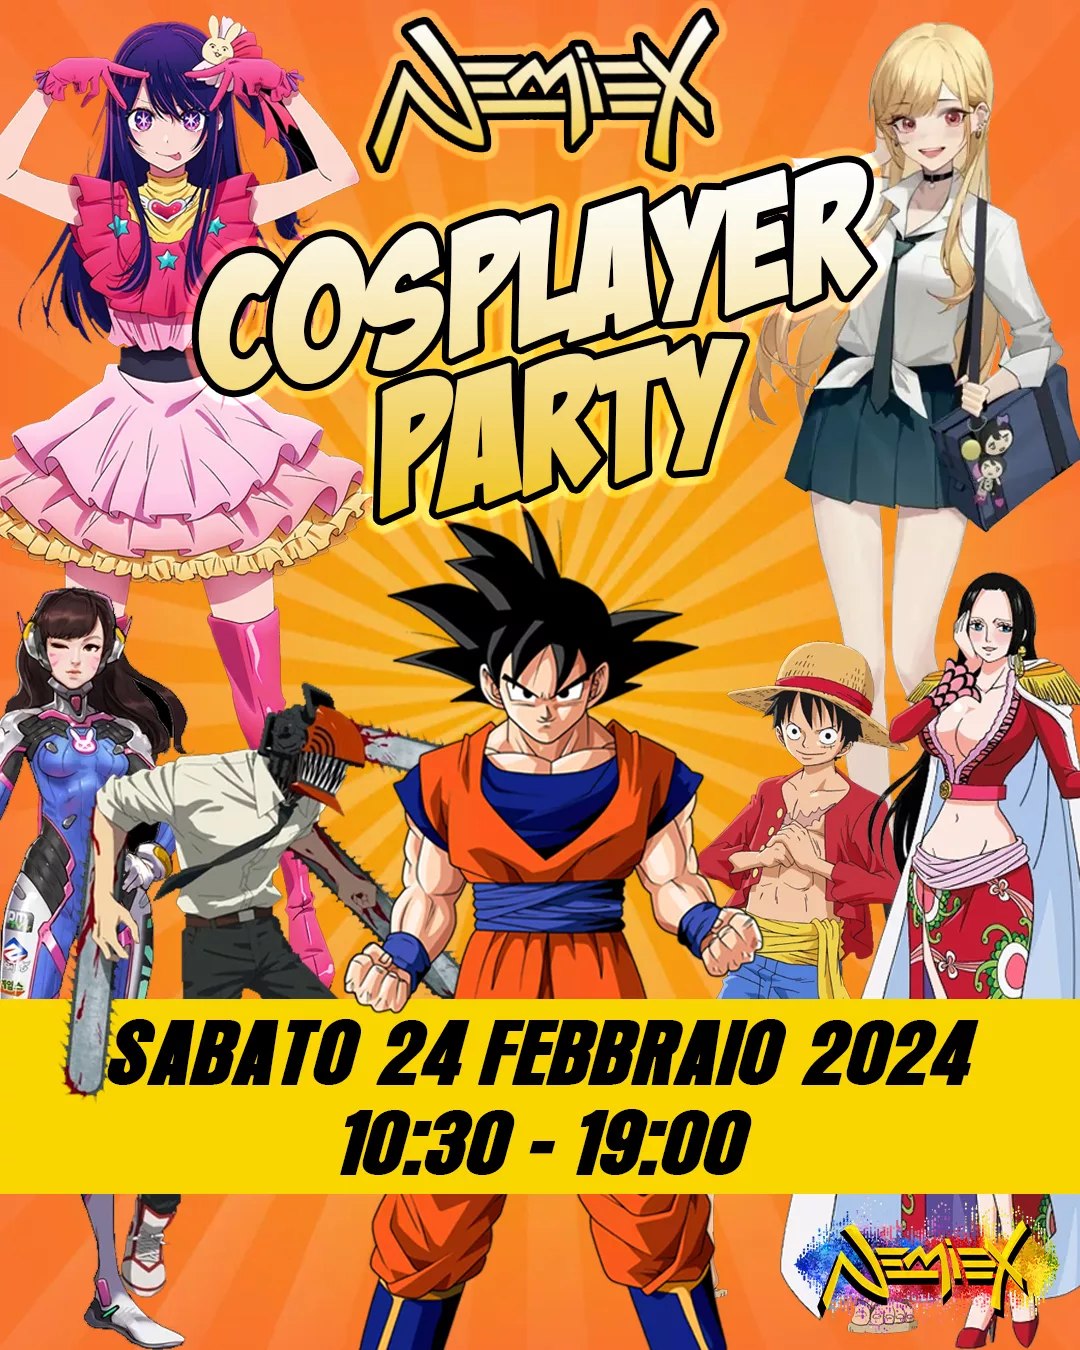 Nemiex Cosplayer Party: 24 Febbraio 2024